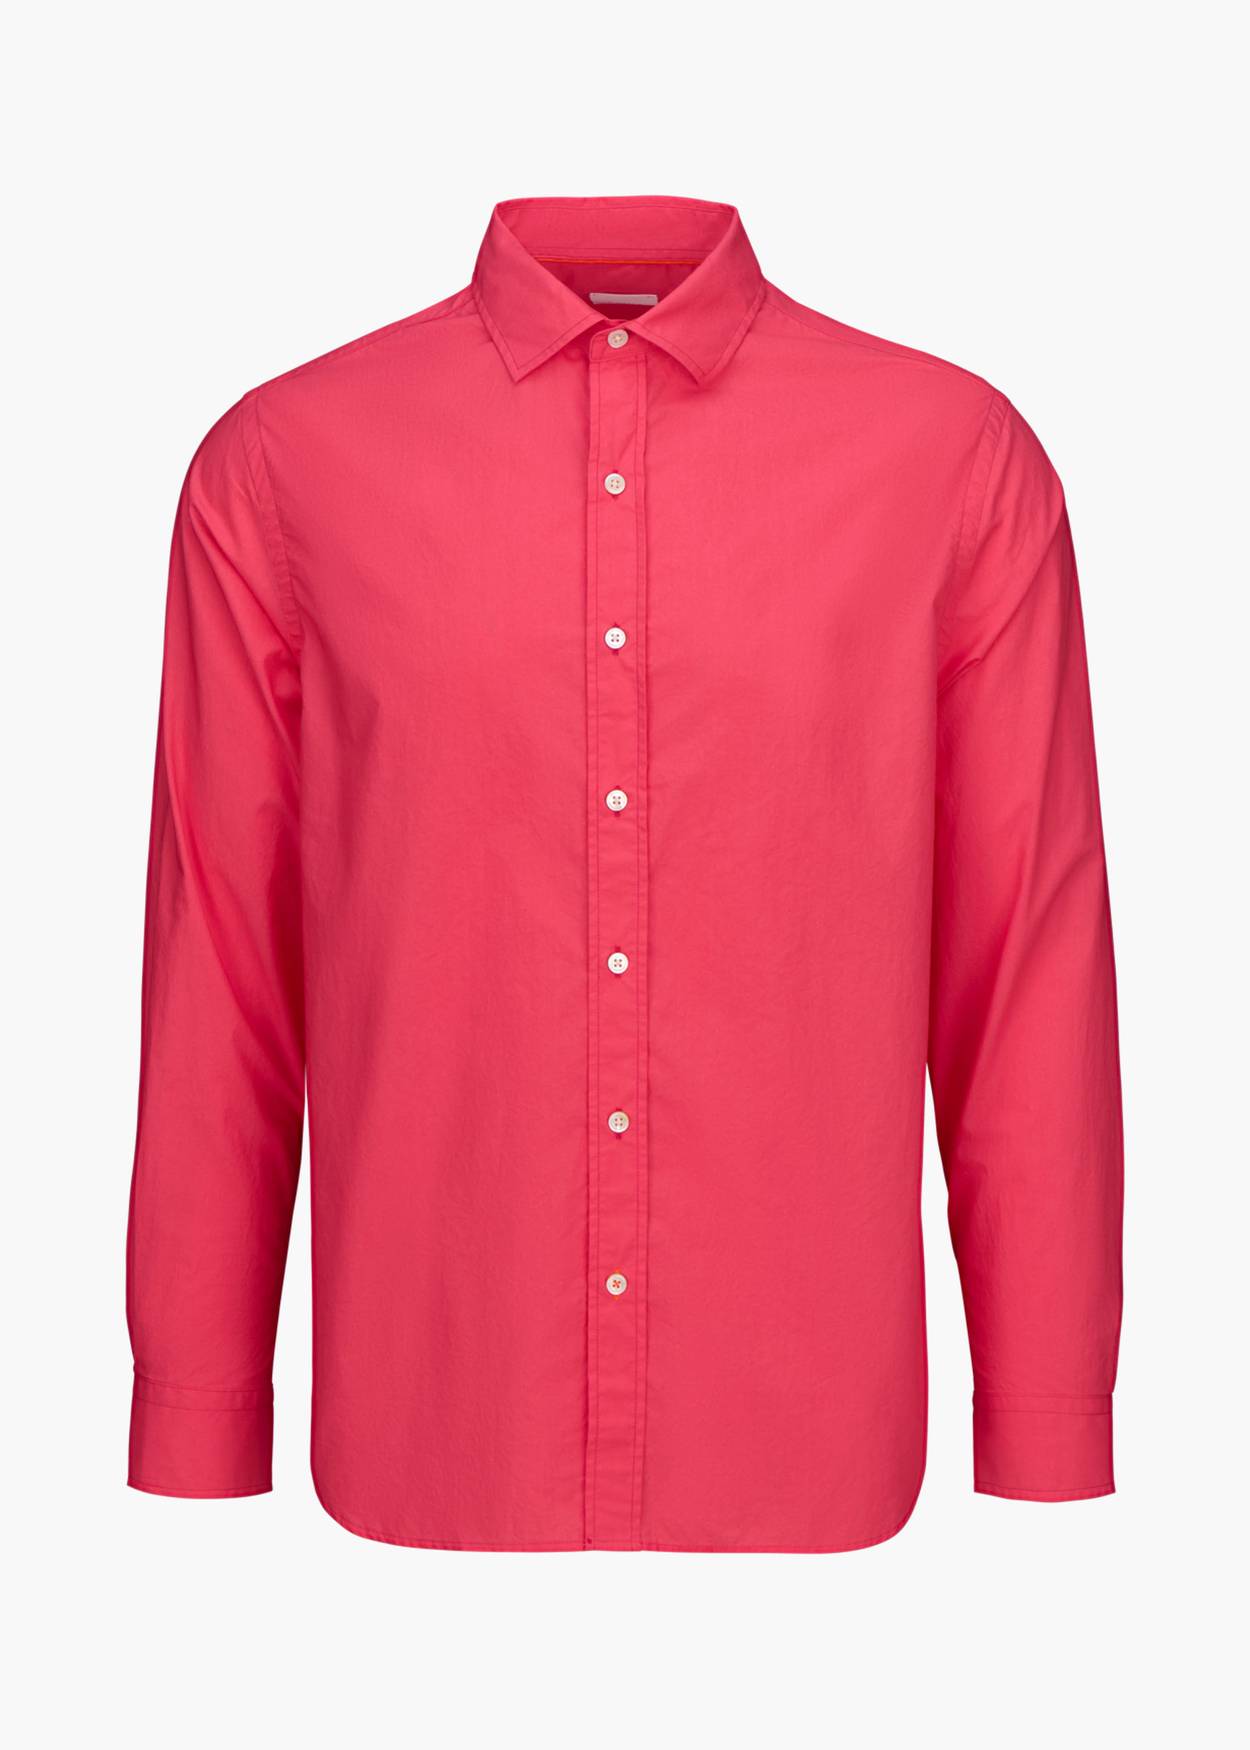 Malfa Garment Dye Shirt